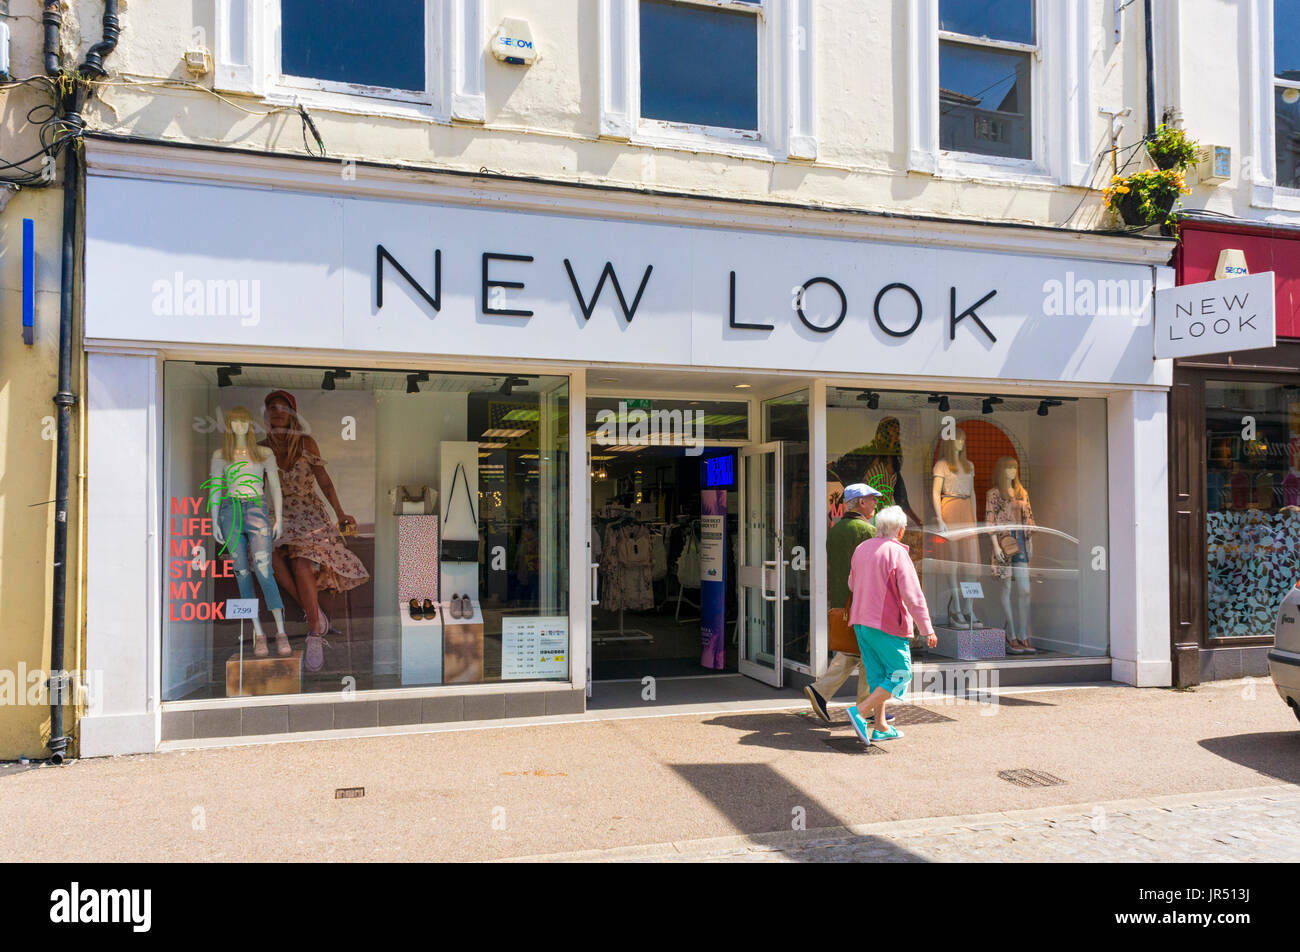 Magasin de vêtements New Look, England, UK Banque D'Images